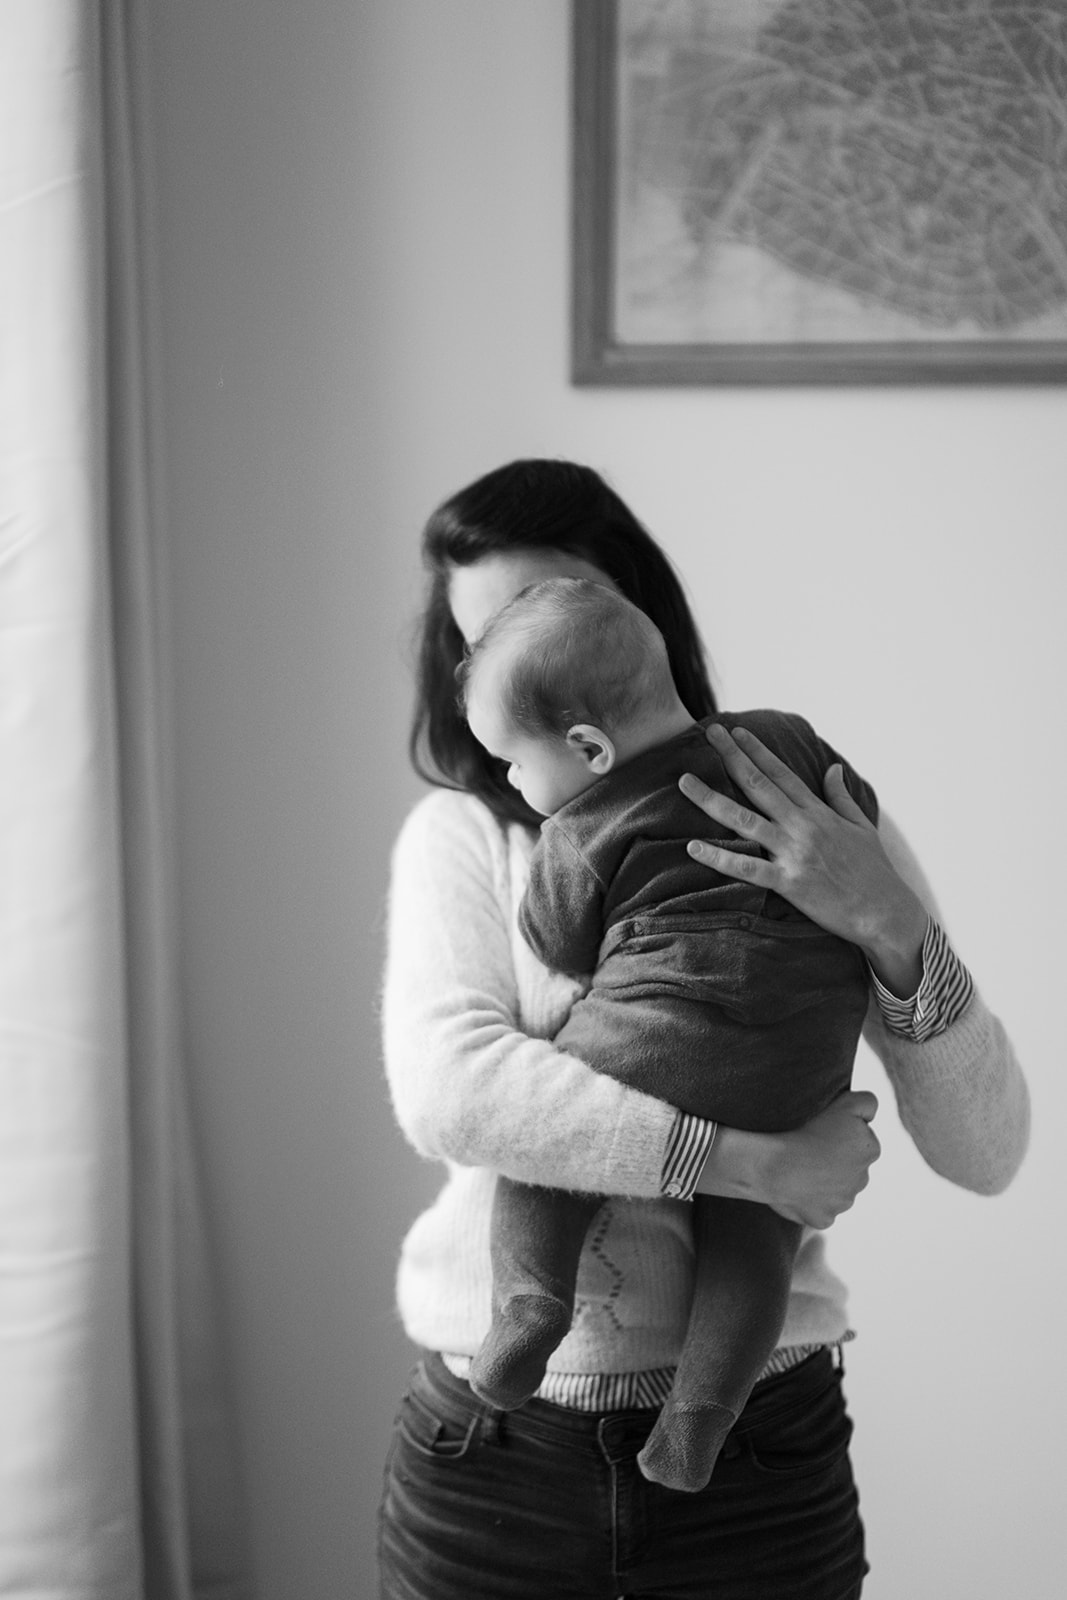 Séance naissance lifestyle Sain Mandé Val de Marne avec un bébé de 8 mois, calin avec sa maman.